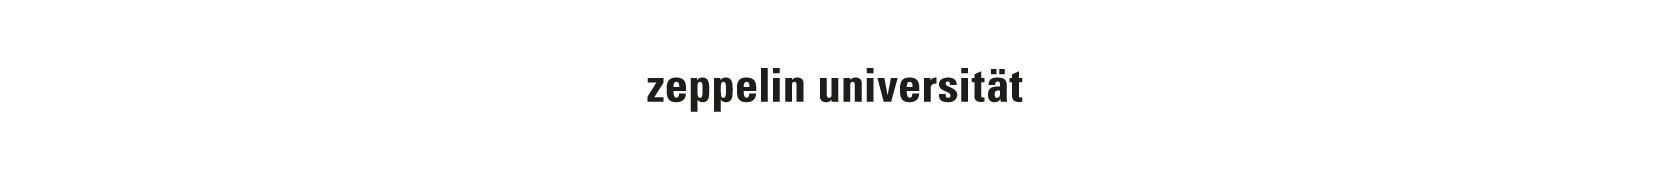 Zeppelin Universität.png